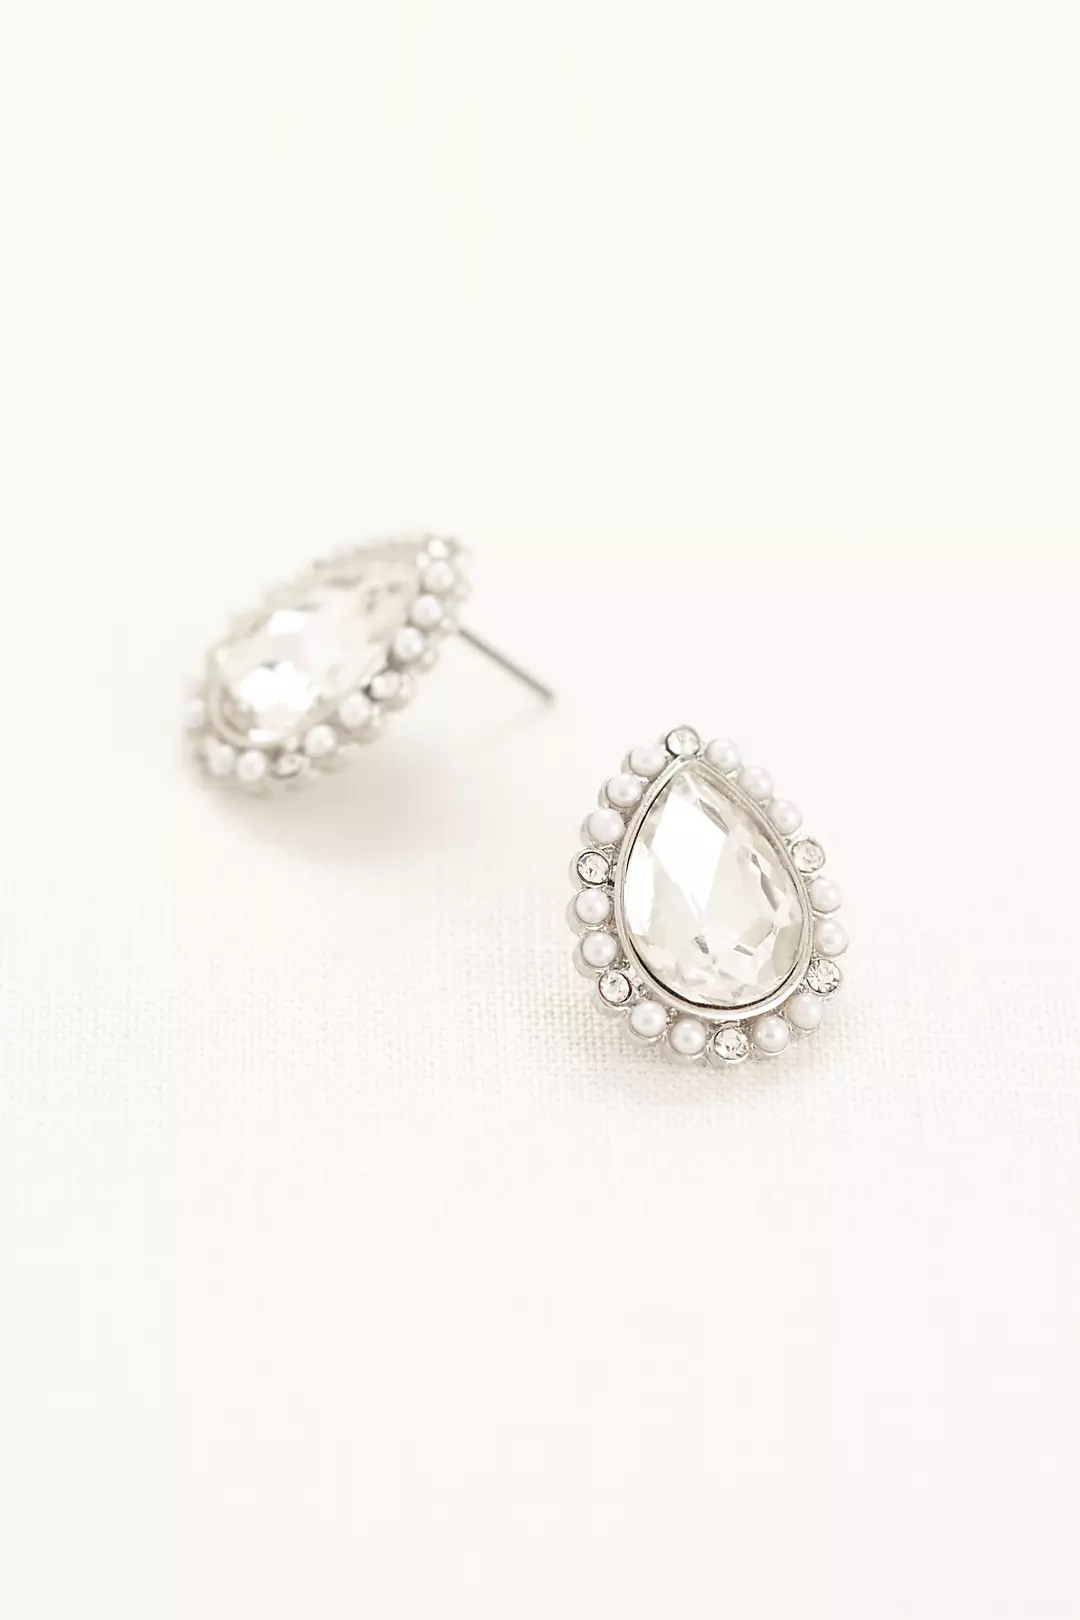 Pearl Teardrop Stud Earrings with Crystals Image